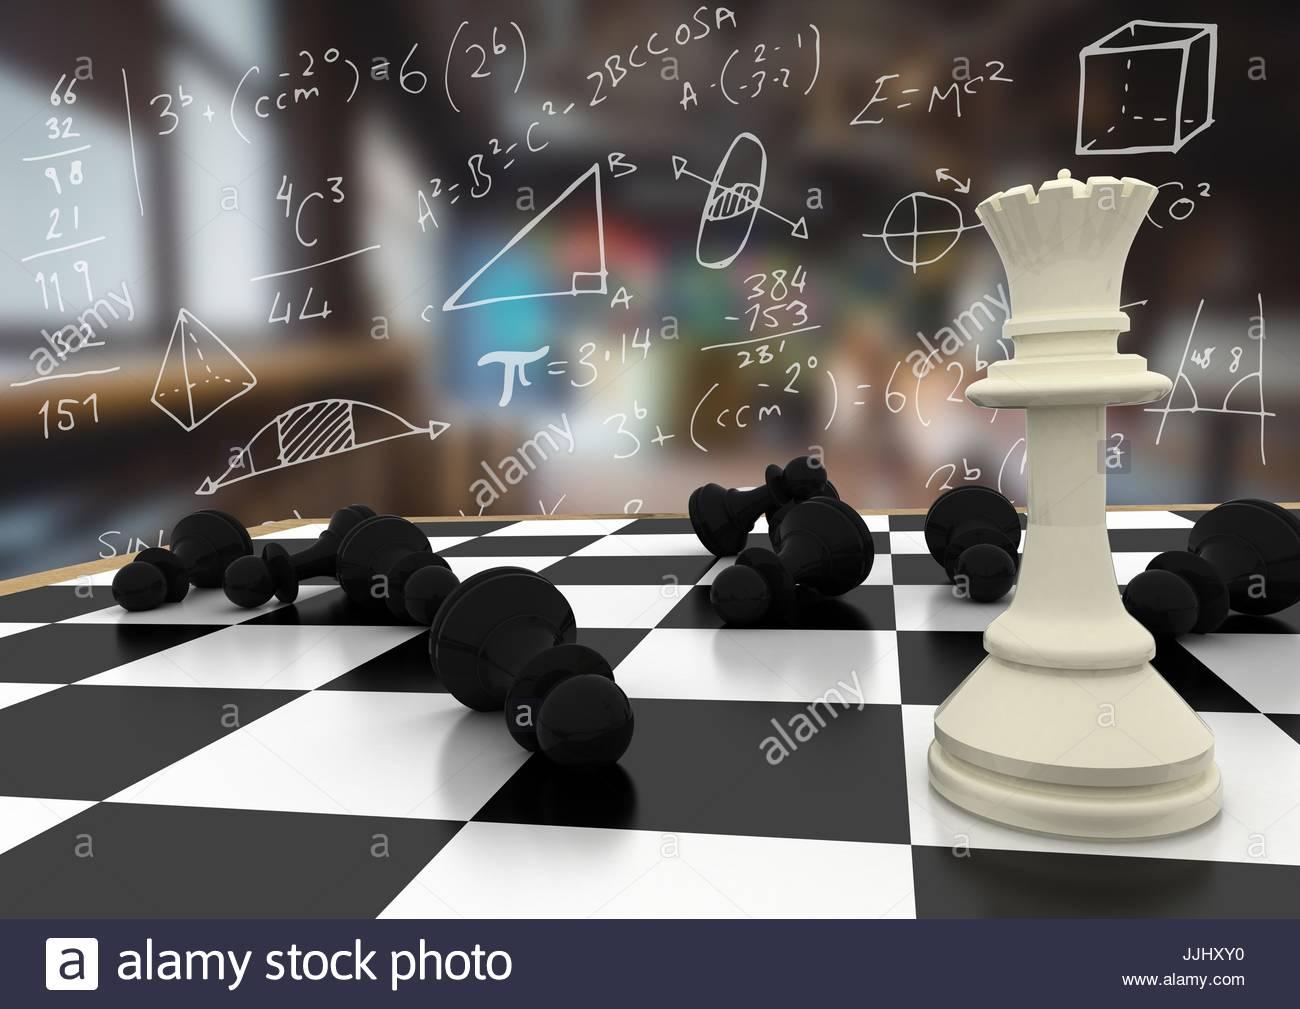 Xadrez e Matemática 